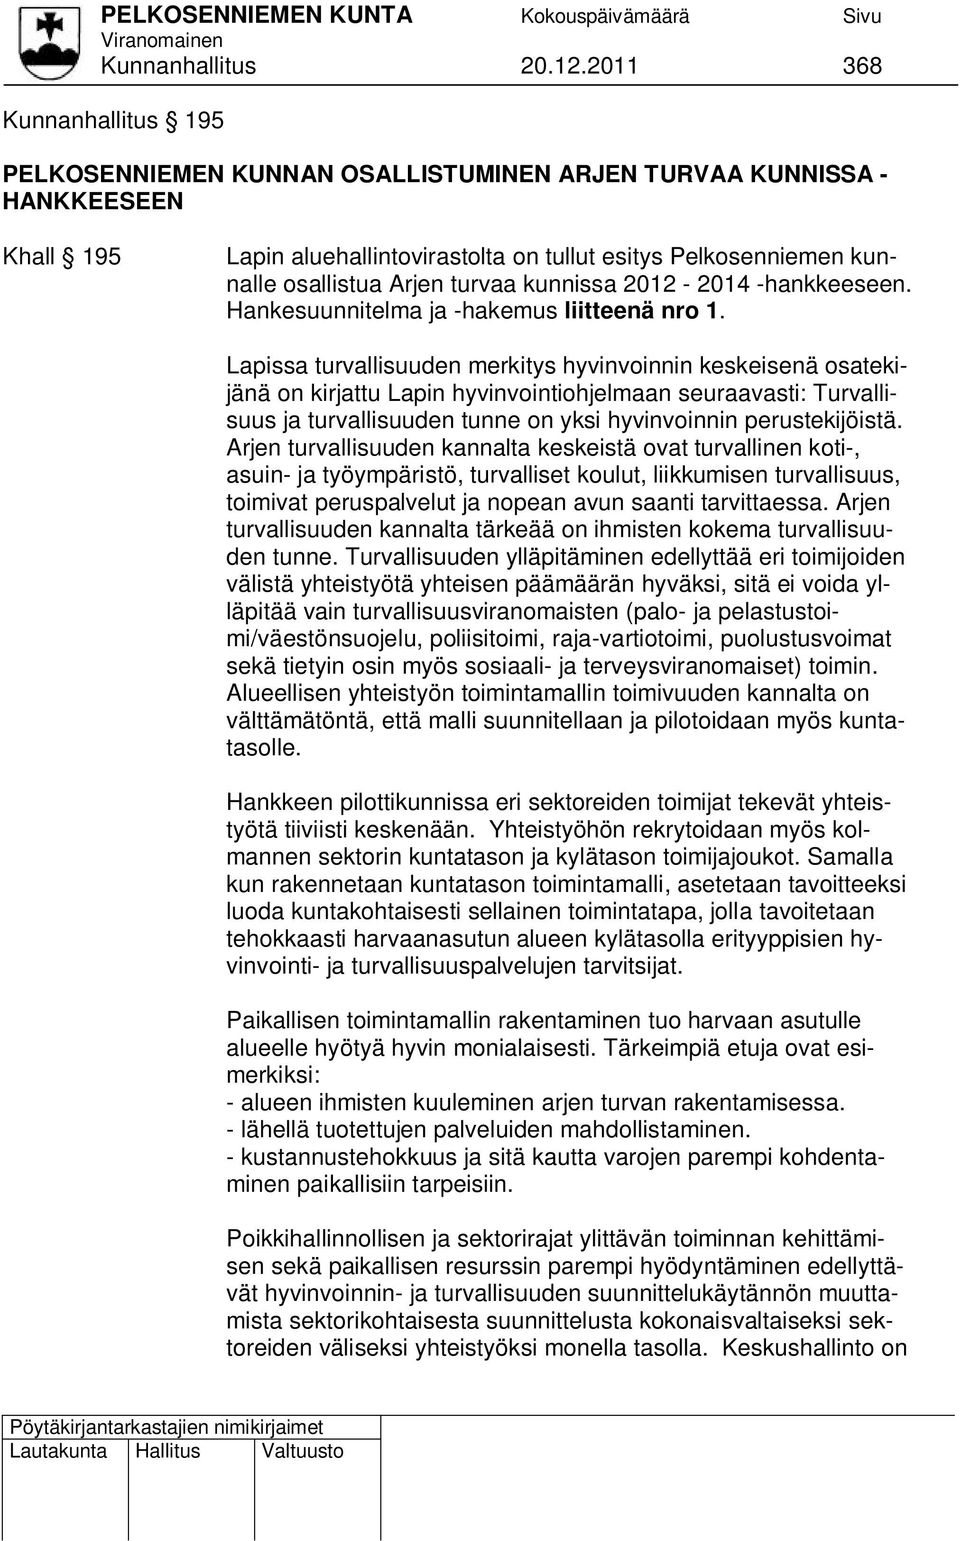 turvaa kunnissa 2012-2014 -hankkeeseen. Hankesuunnitelma ja -hakemus liitteenä nro 1.